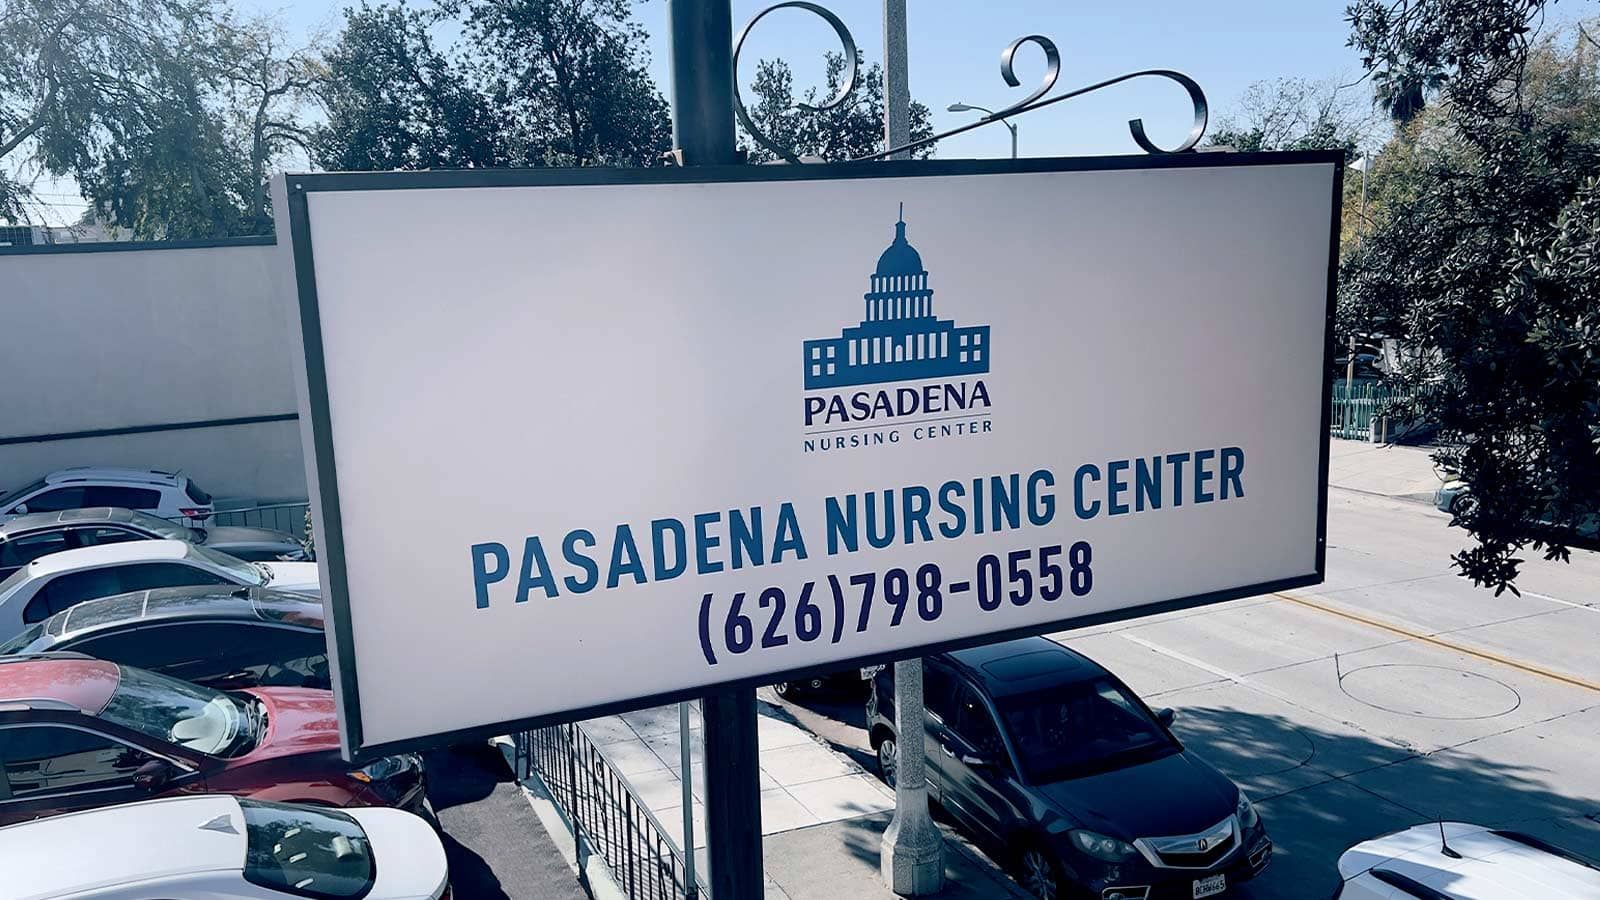 Pasadena Nursing Center outdoor signage face replacement